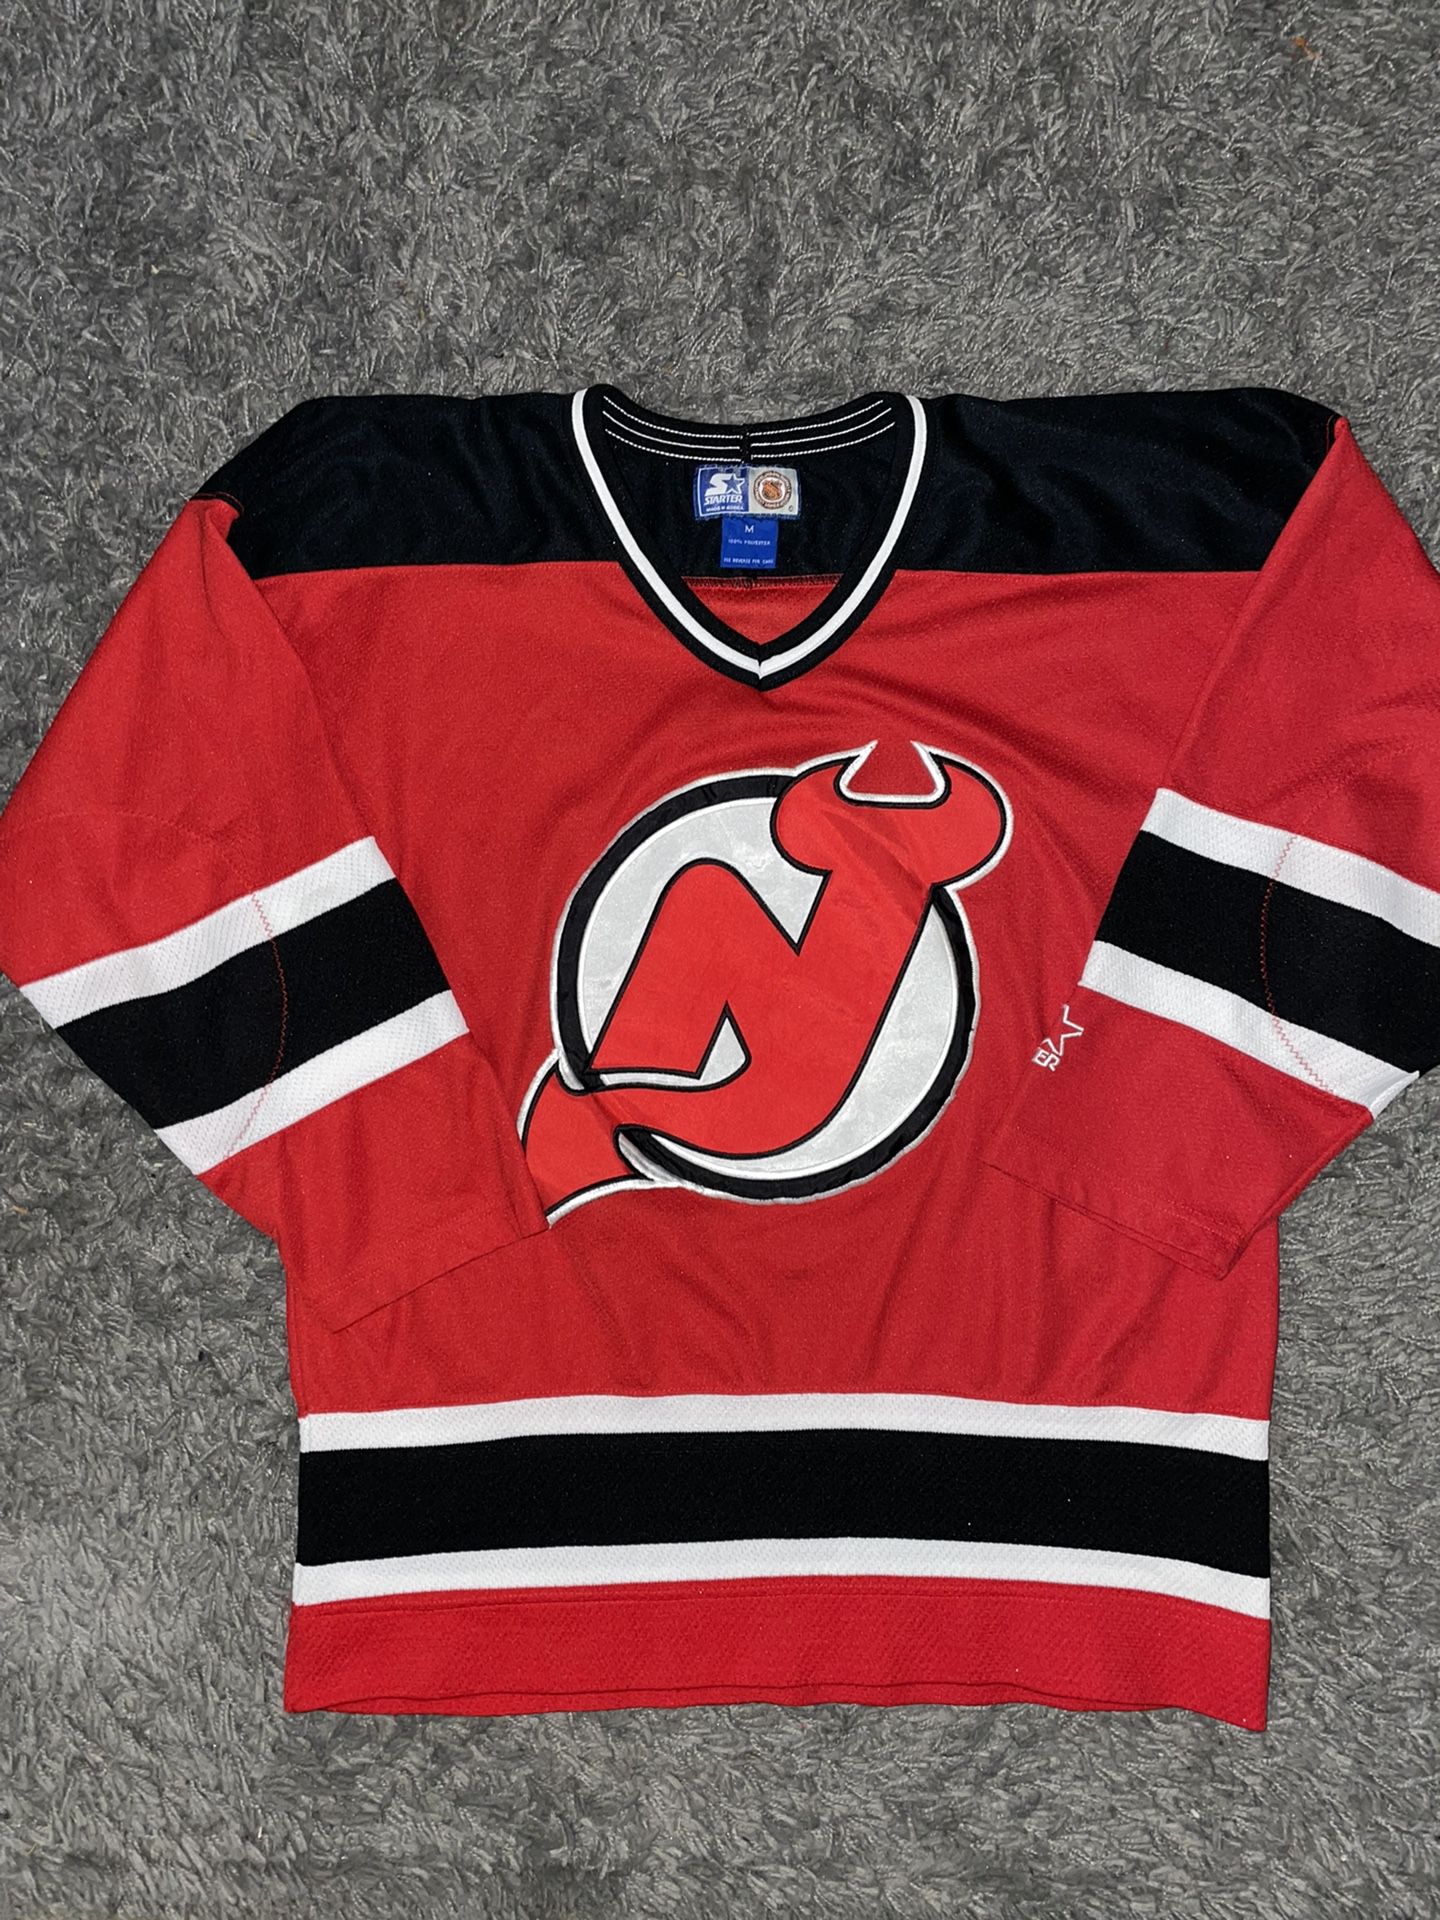 Vintage Starter New Jersey Devils NHL jersey Sz M